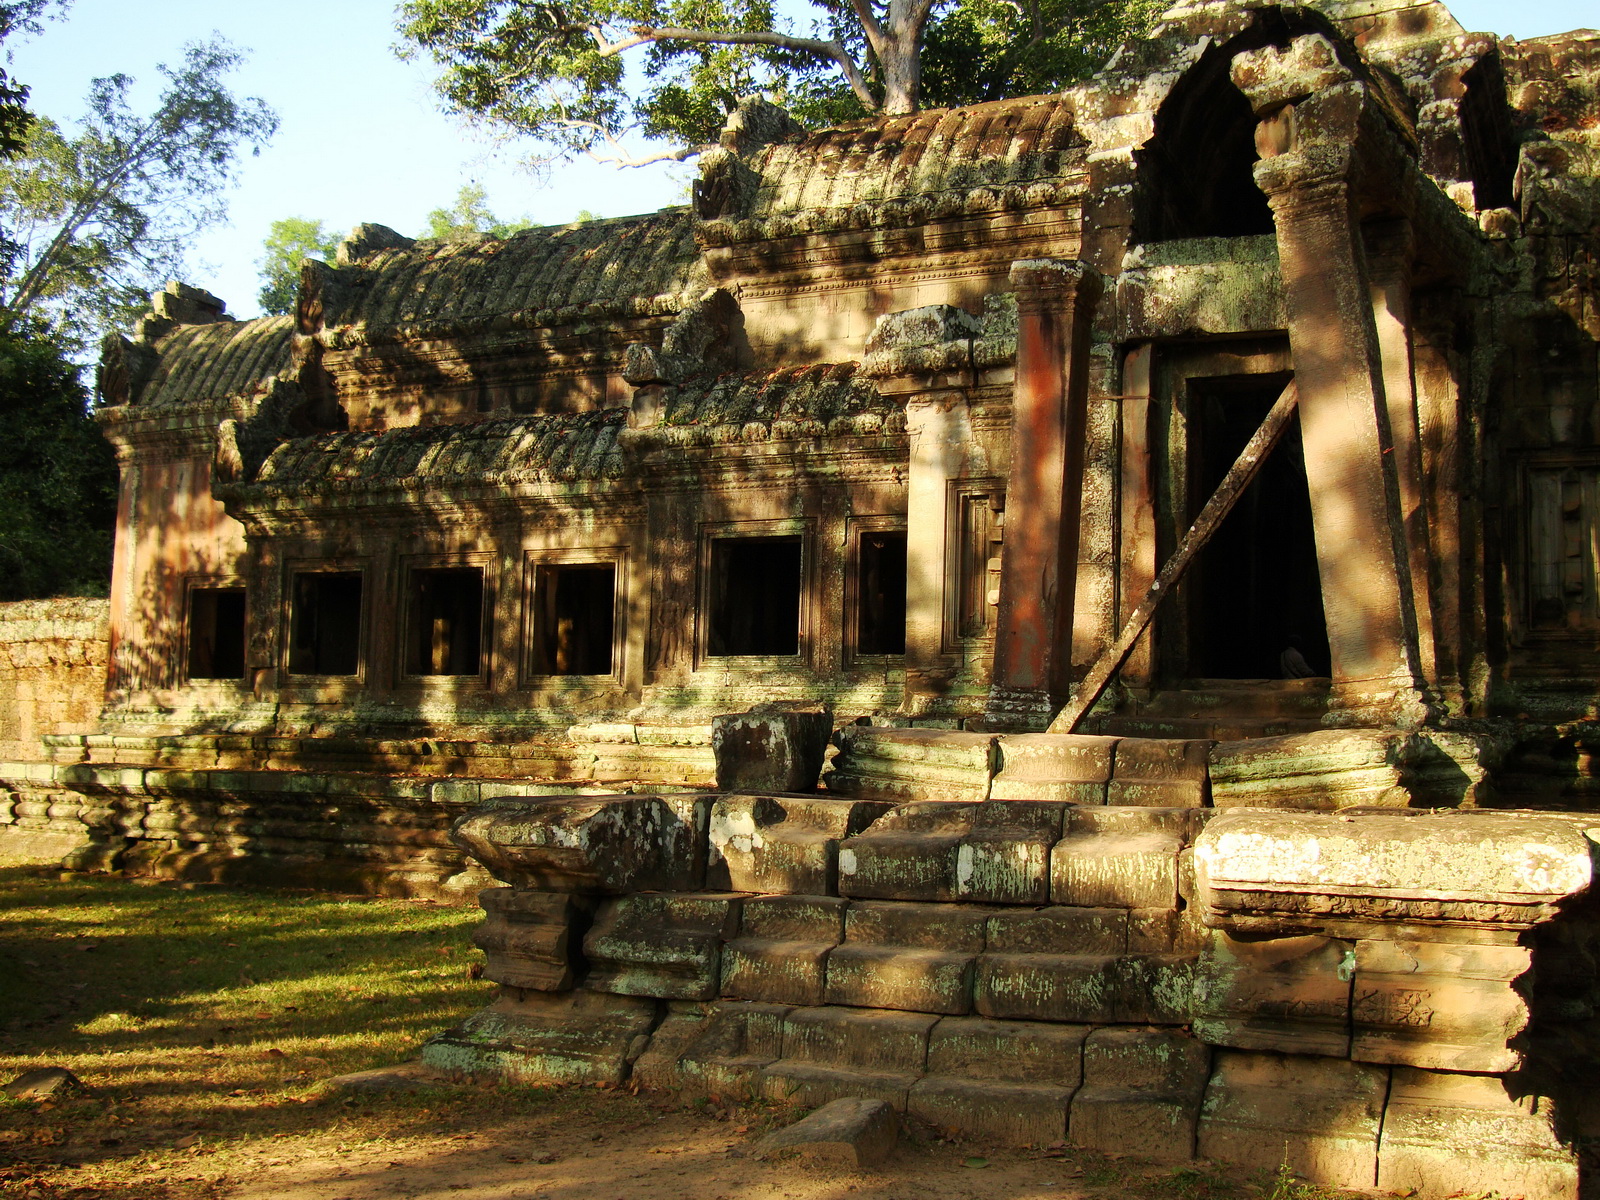 Angkor Wat approaches outer eastern Gopura Angkor Siem Reap 05